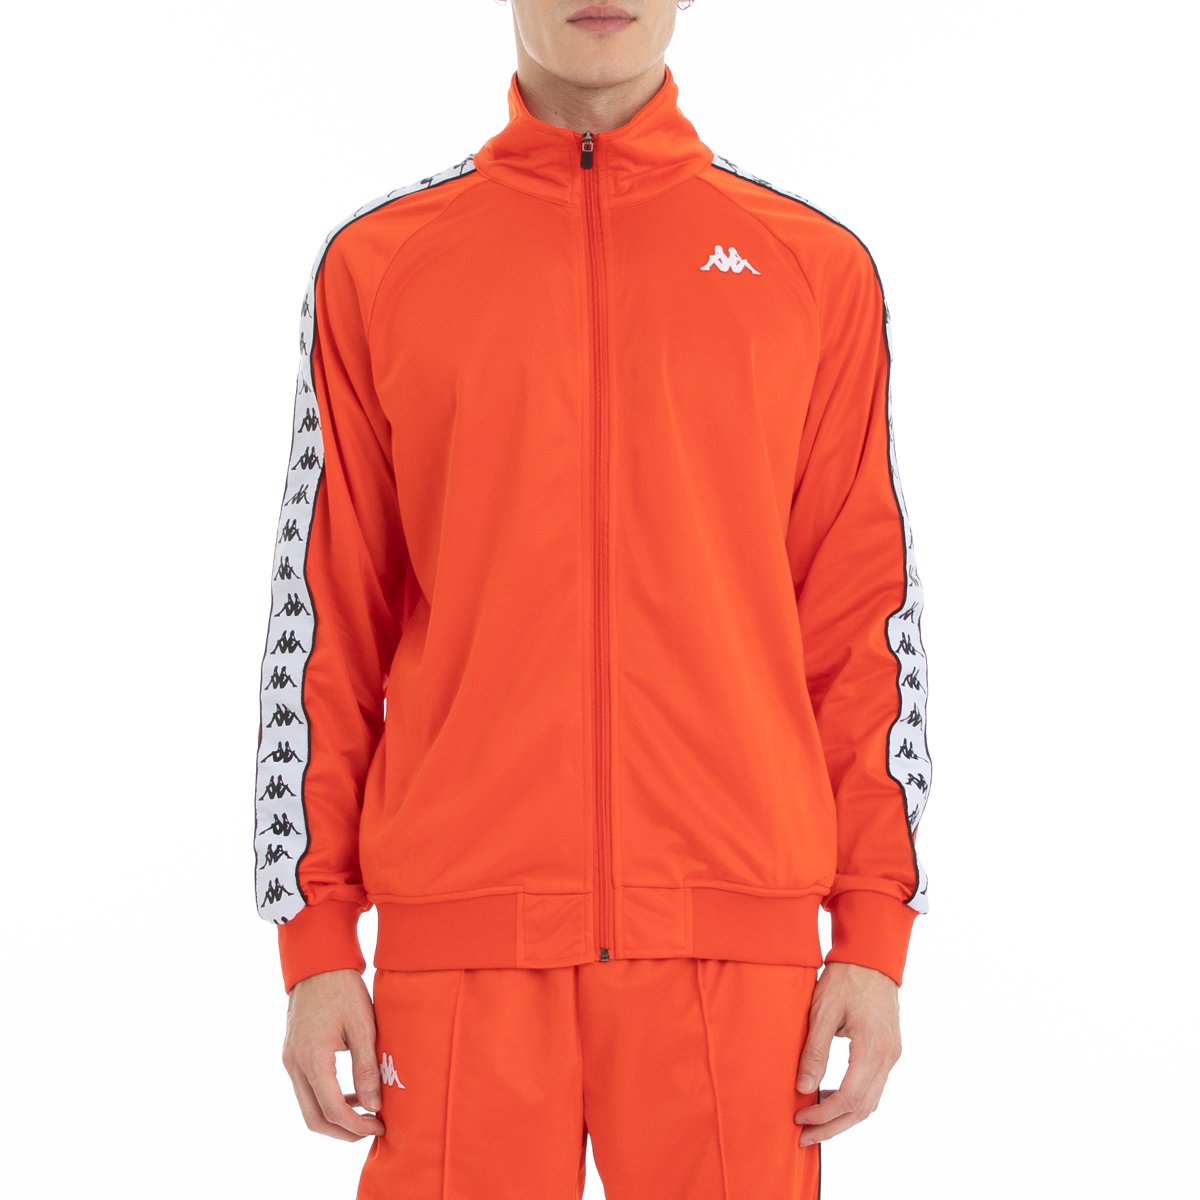 orange kappa track jacket